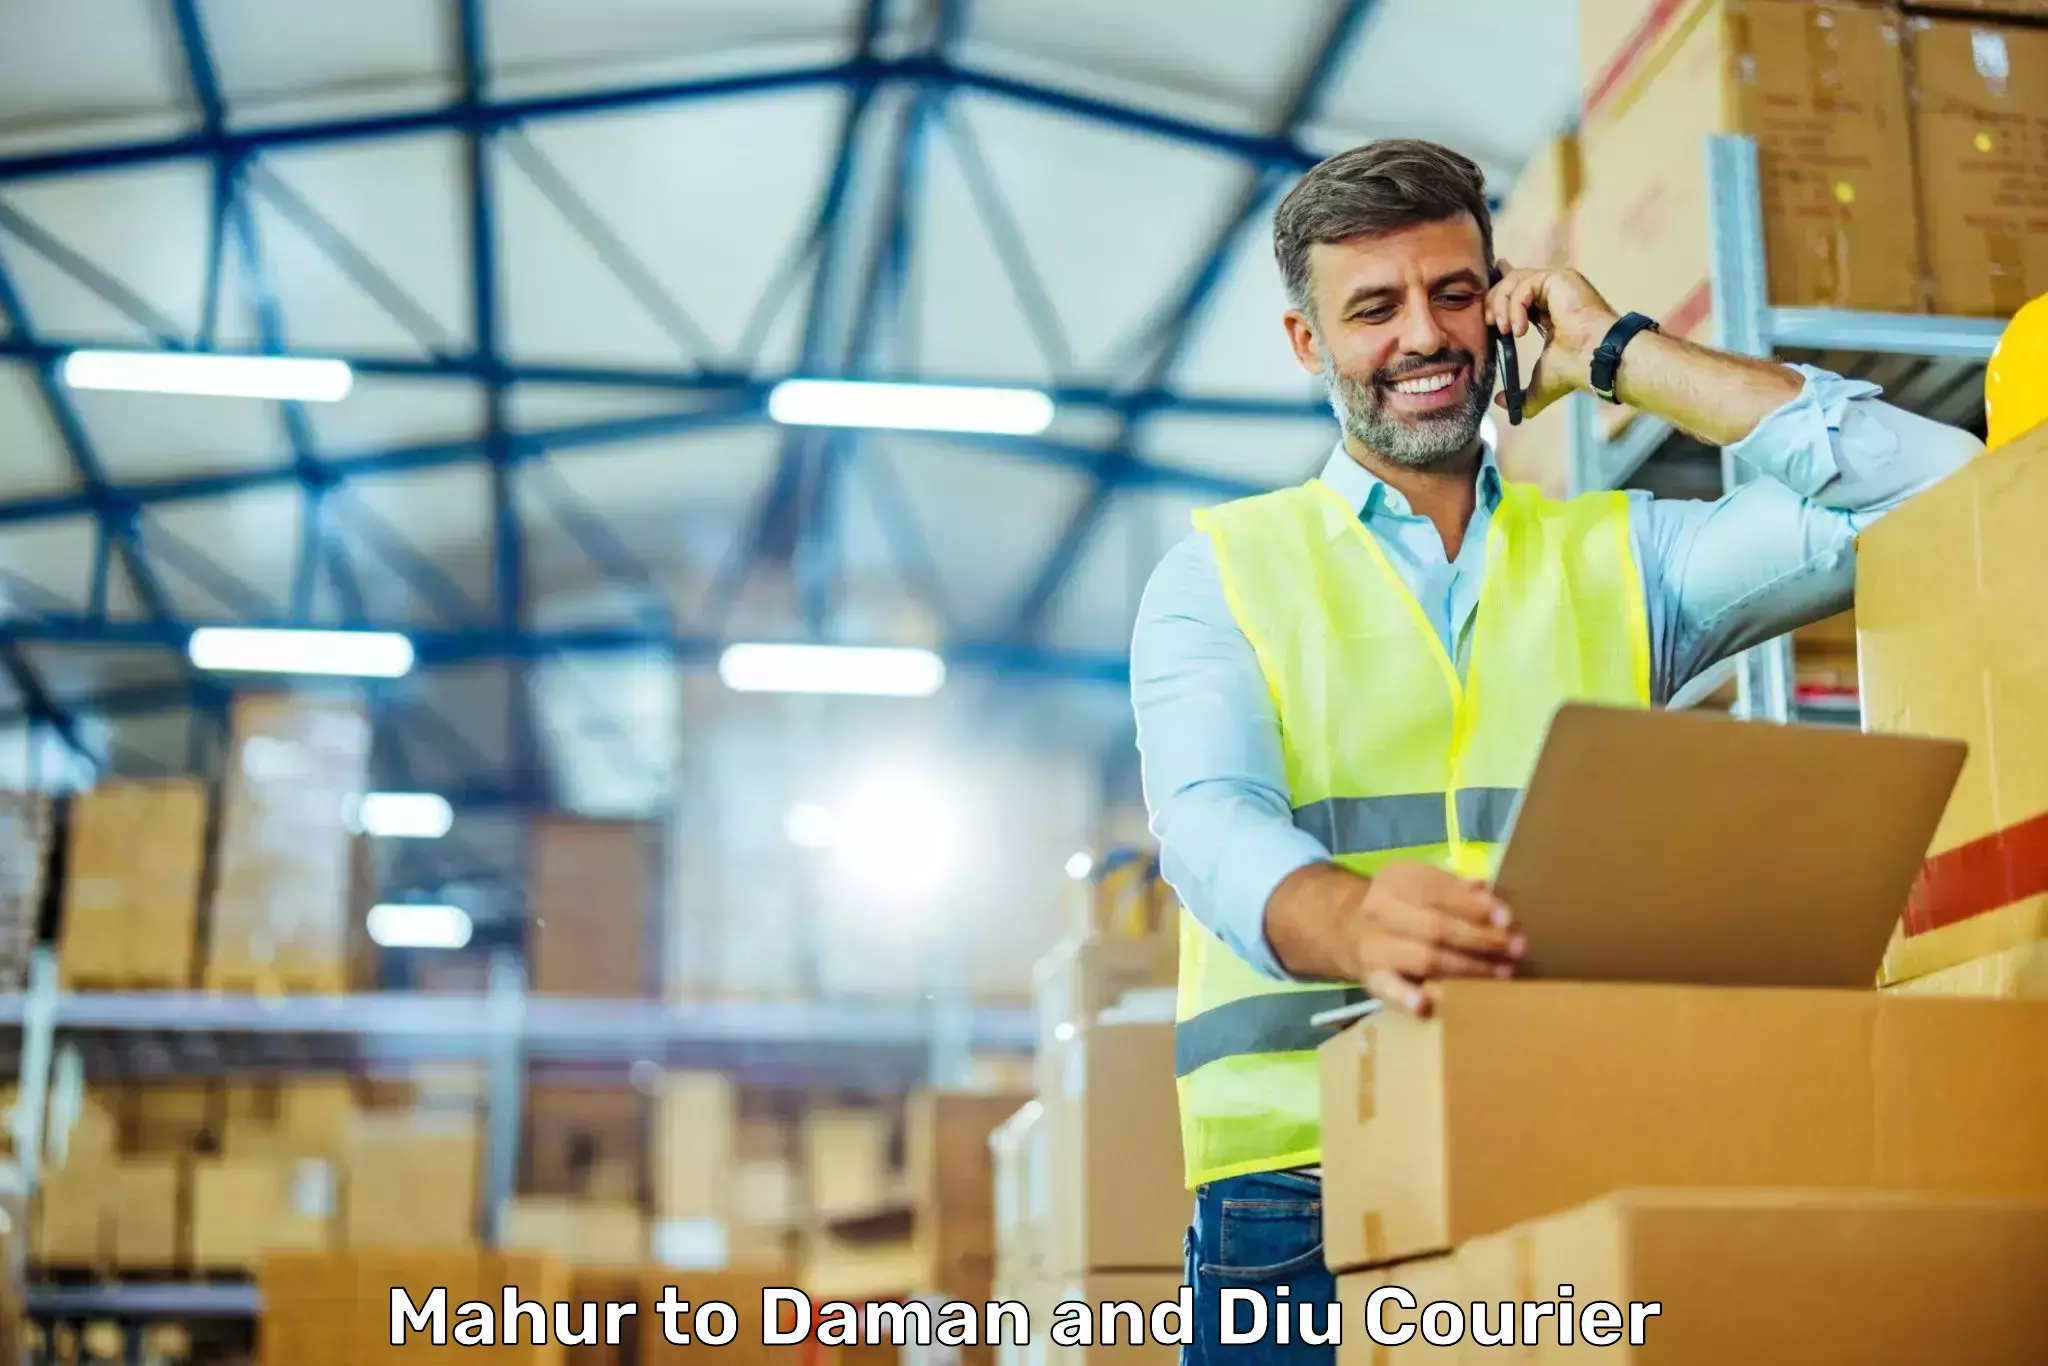 Efficient freight service Mahur to Daman and Diu